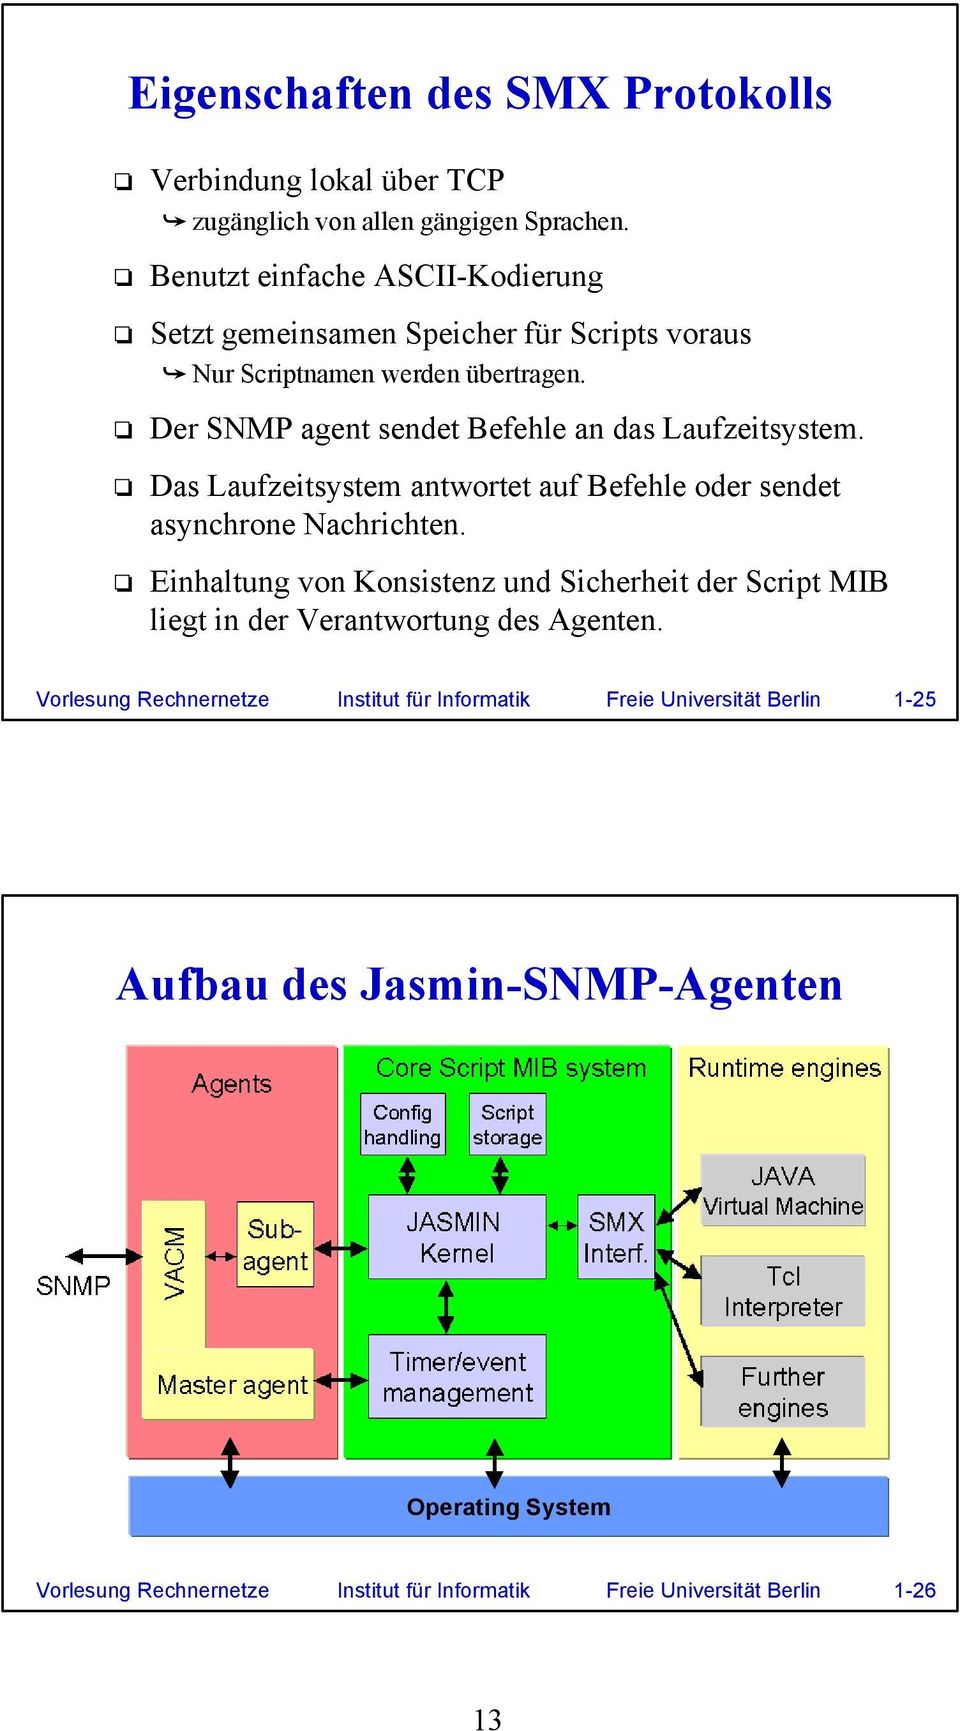 Der SNMP agent sendet Befehle an das Laufzeitsystem. Das Laufzeitsystem antwortet auf Befehle oder sendet asynchrone Nachrichten.